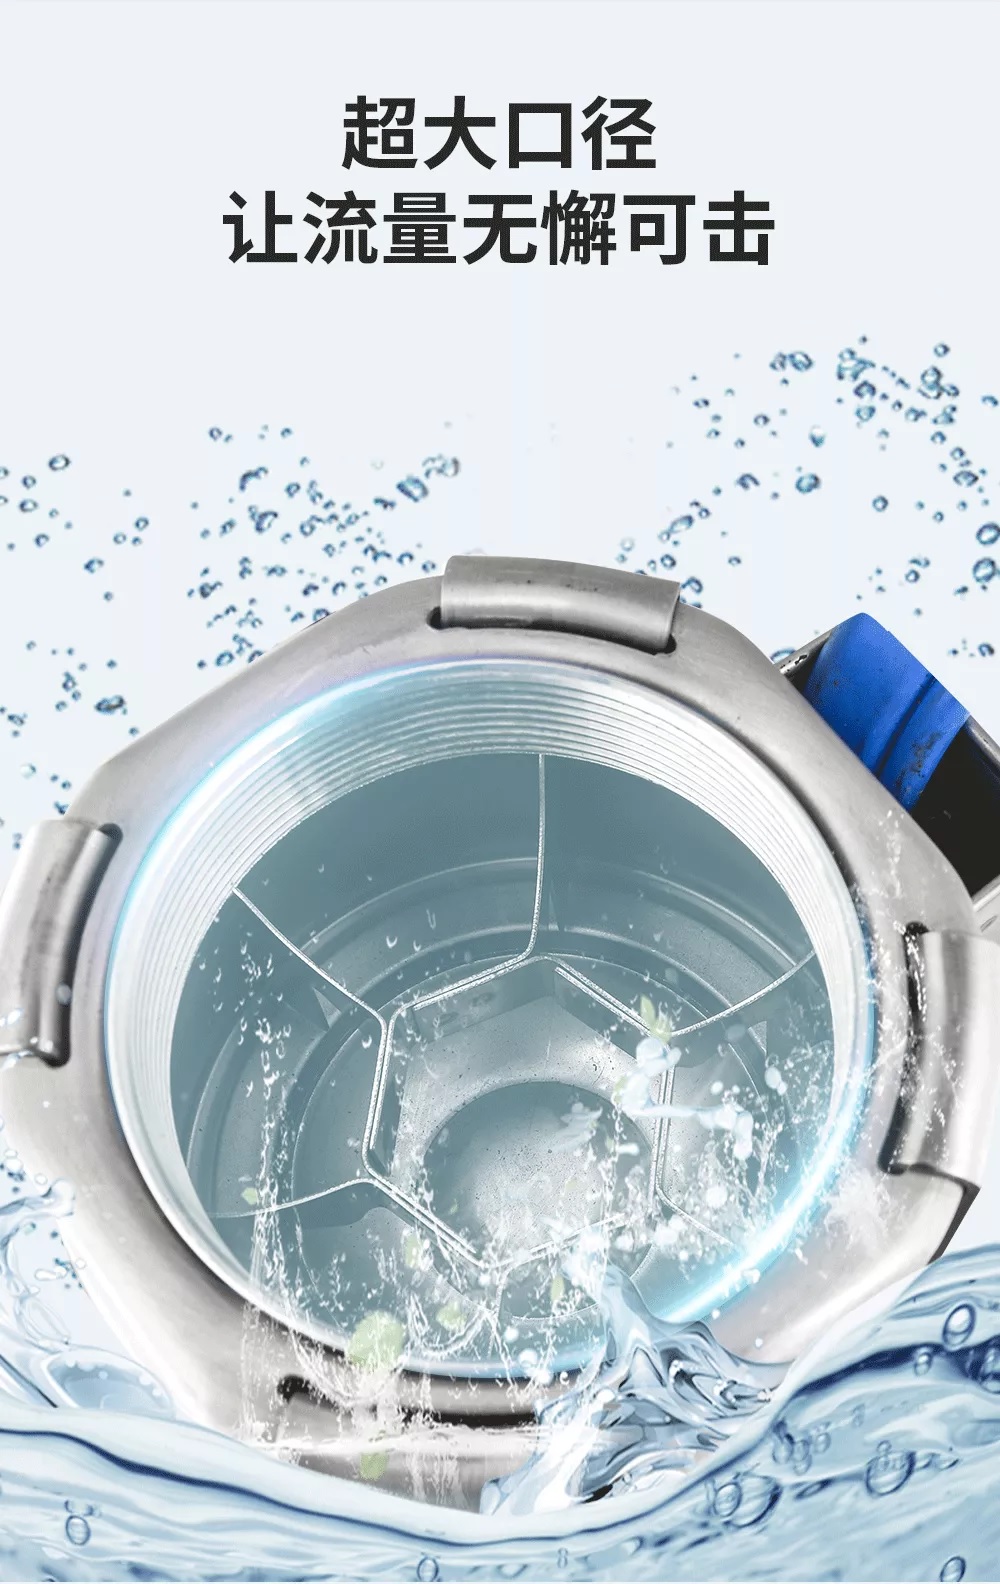 新界150QJY-S型井用潜水电泵新品上市(图3)